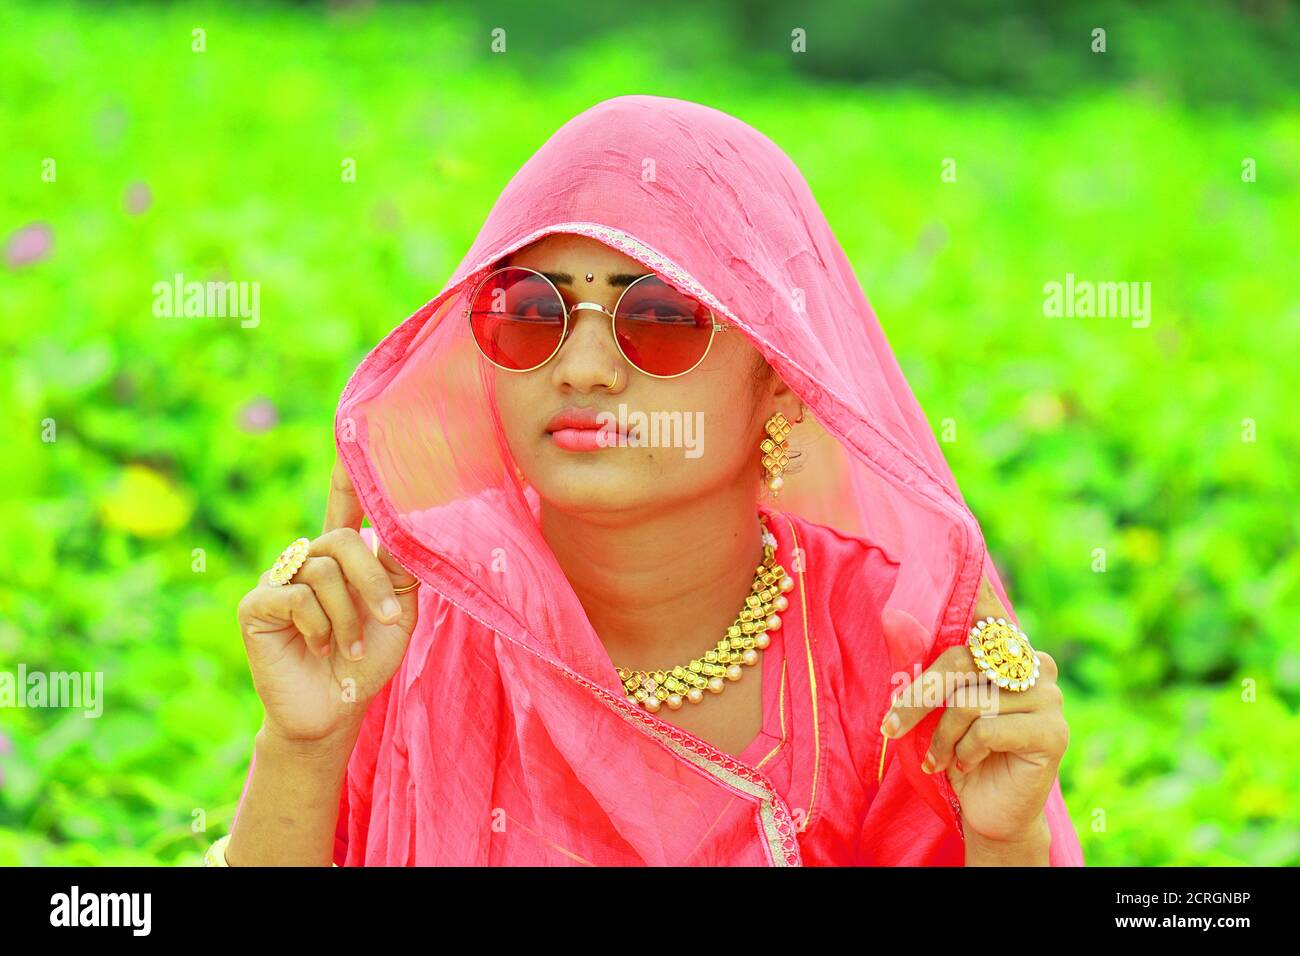 Un ritratto closeup immagine del viso indiano bella giovane donna Con vestito tradizionale Rajasthani rajputi di colore rosa e lucido occhiali eleganti Foto Stock